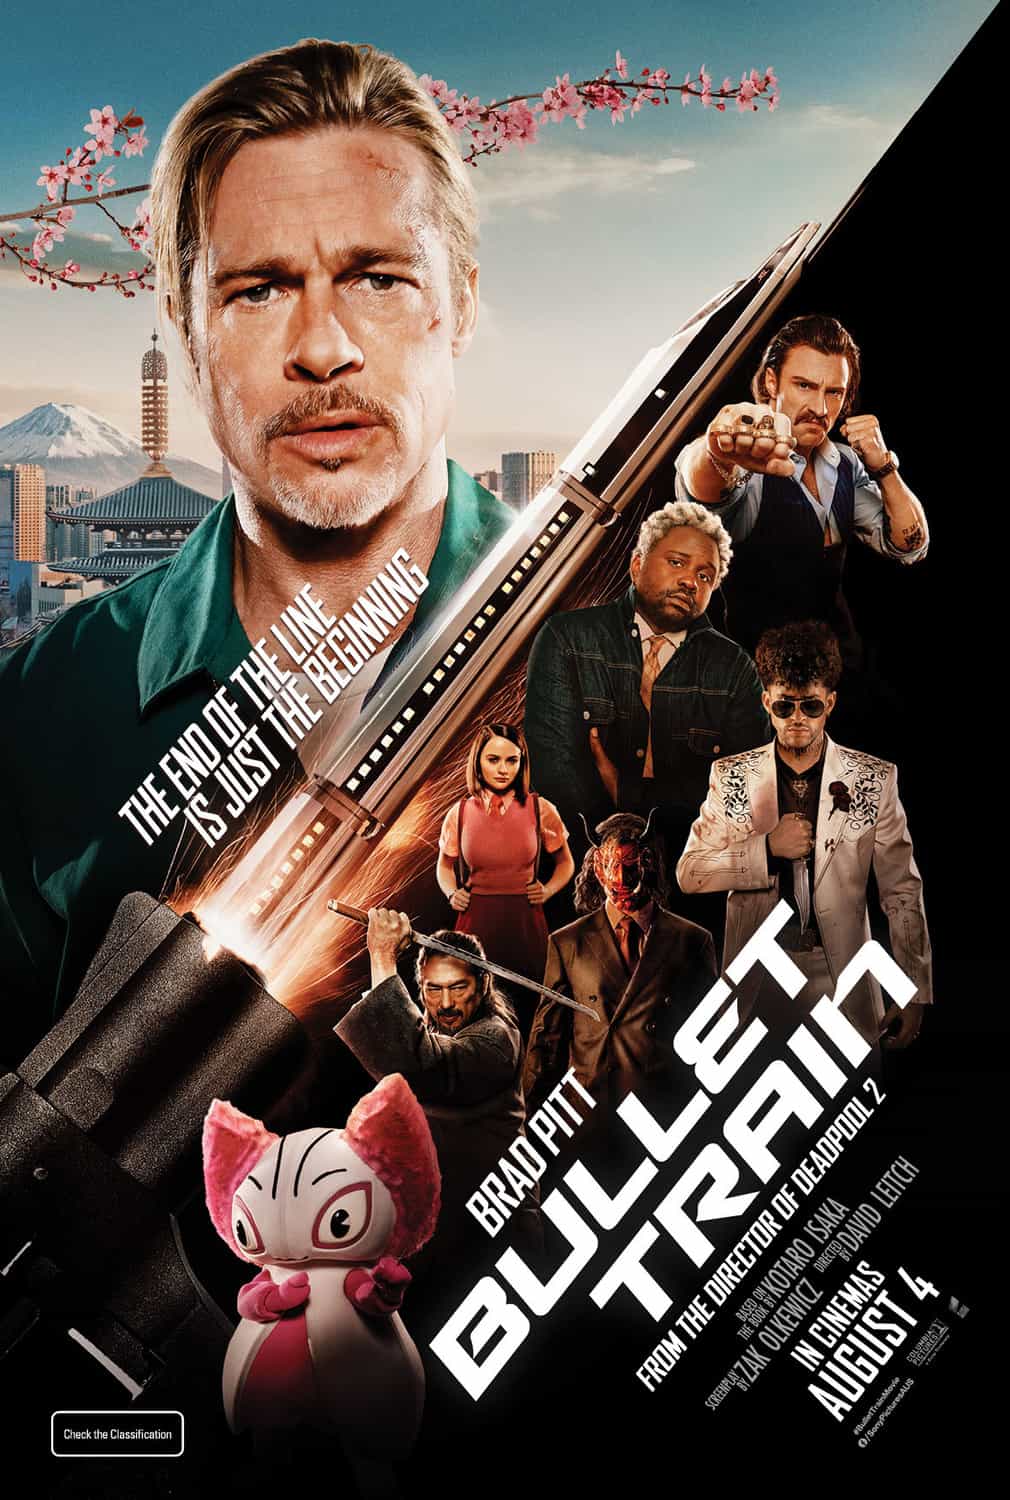 New poster released for Bullet Train starring Brad Pitt - movie UK release date 29th July 2022 #bullettrain